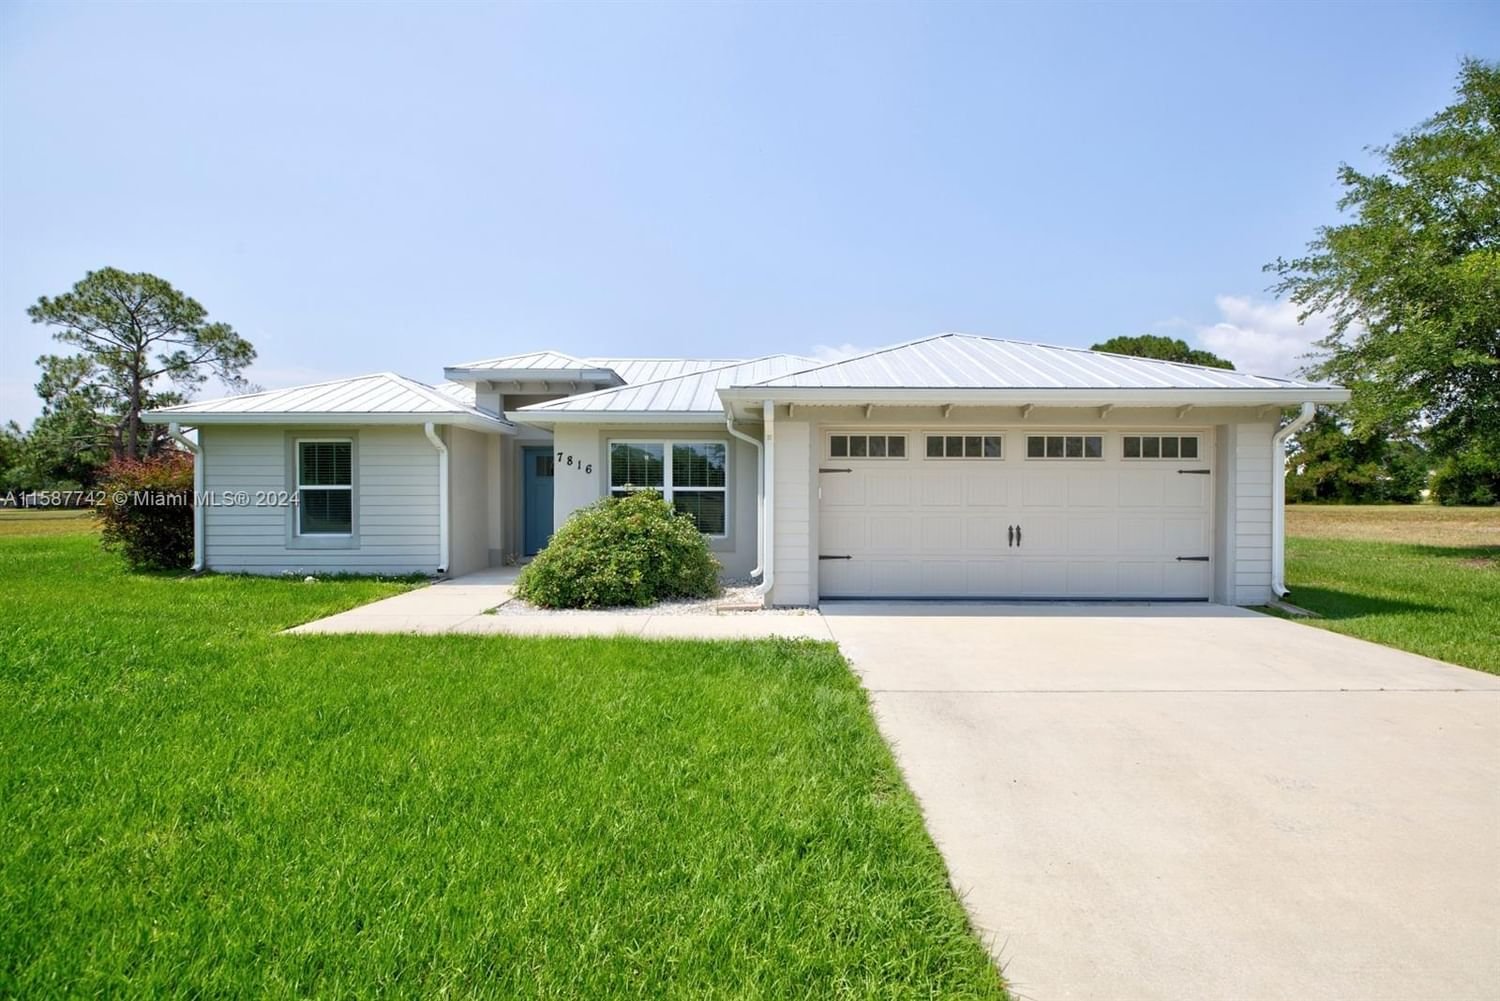 Real estate property located at 7816 Pine Glen Rd, Highlands County, Spring Lake Village, Sebring, FL